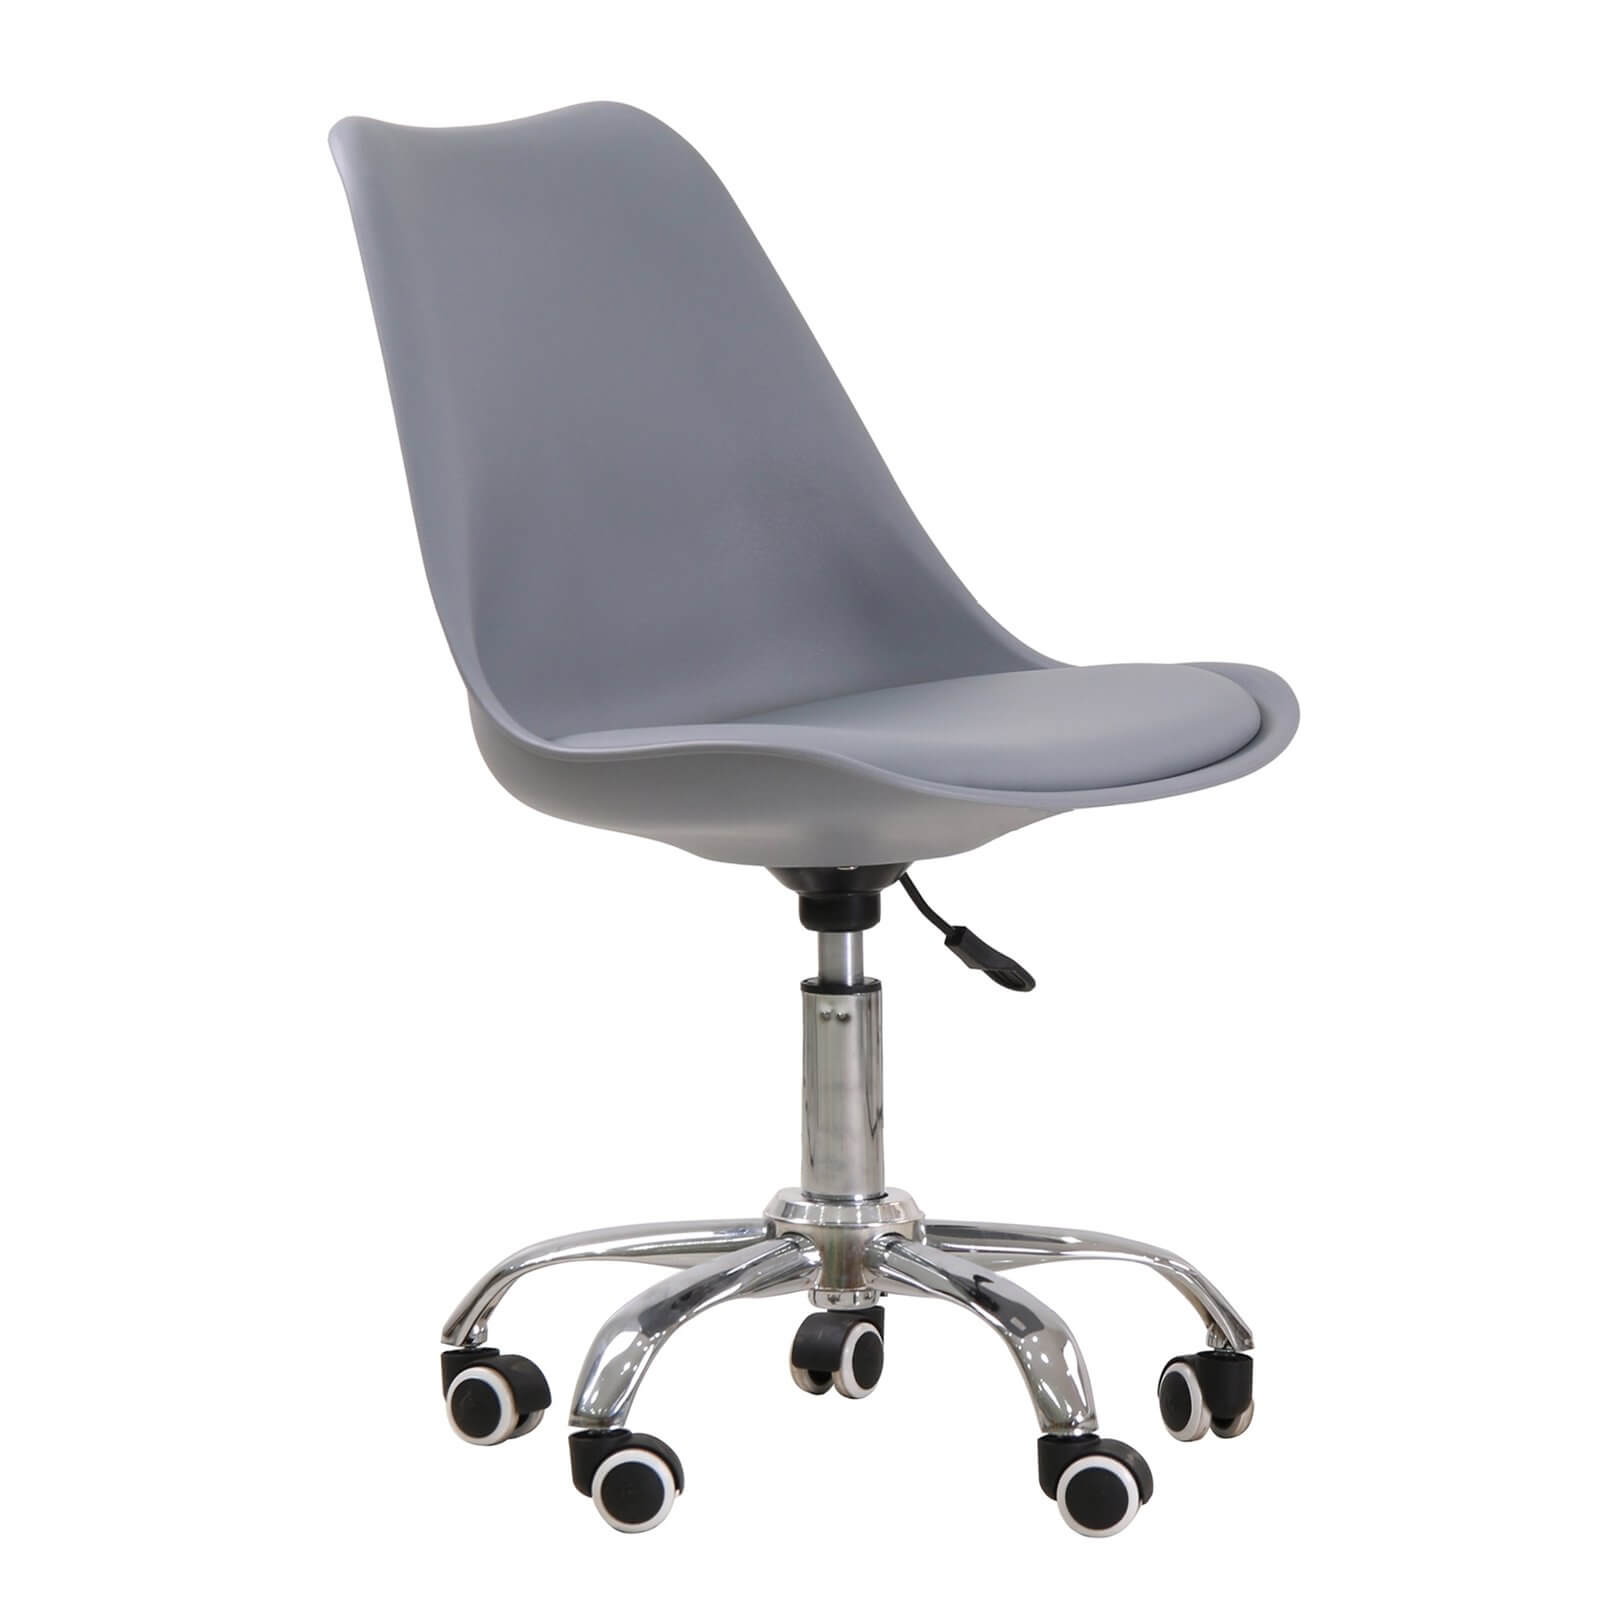 Orsen Swivel Office Chair - Grey